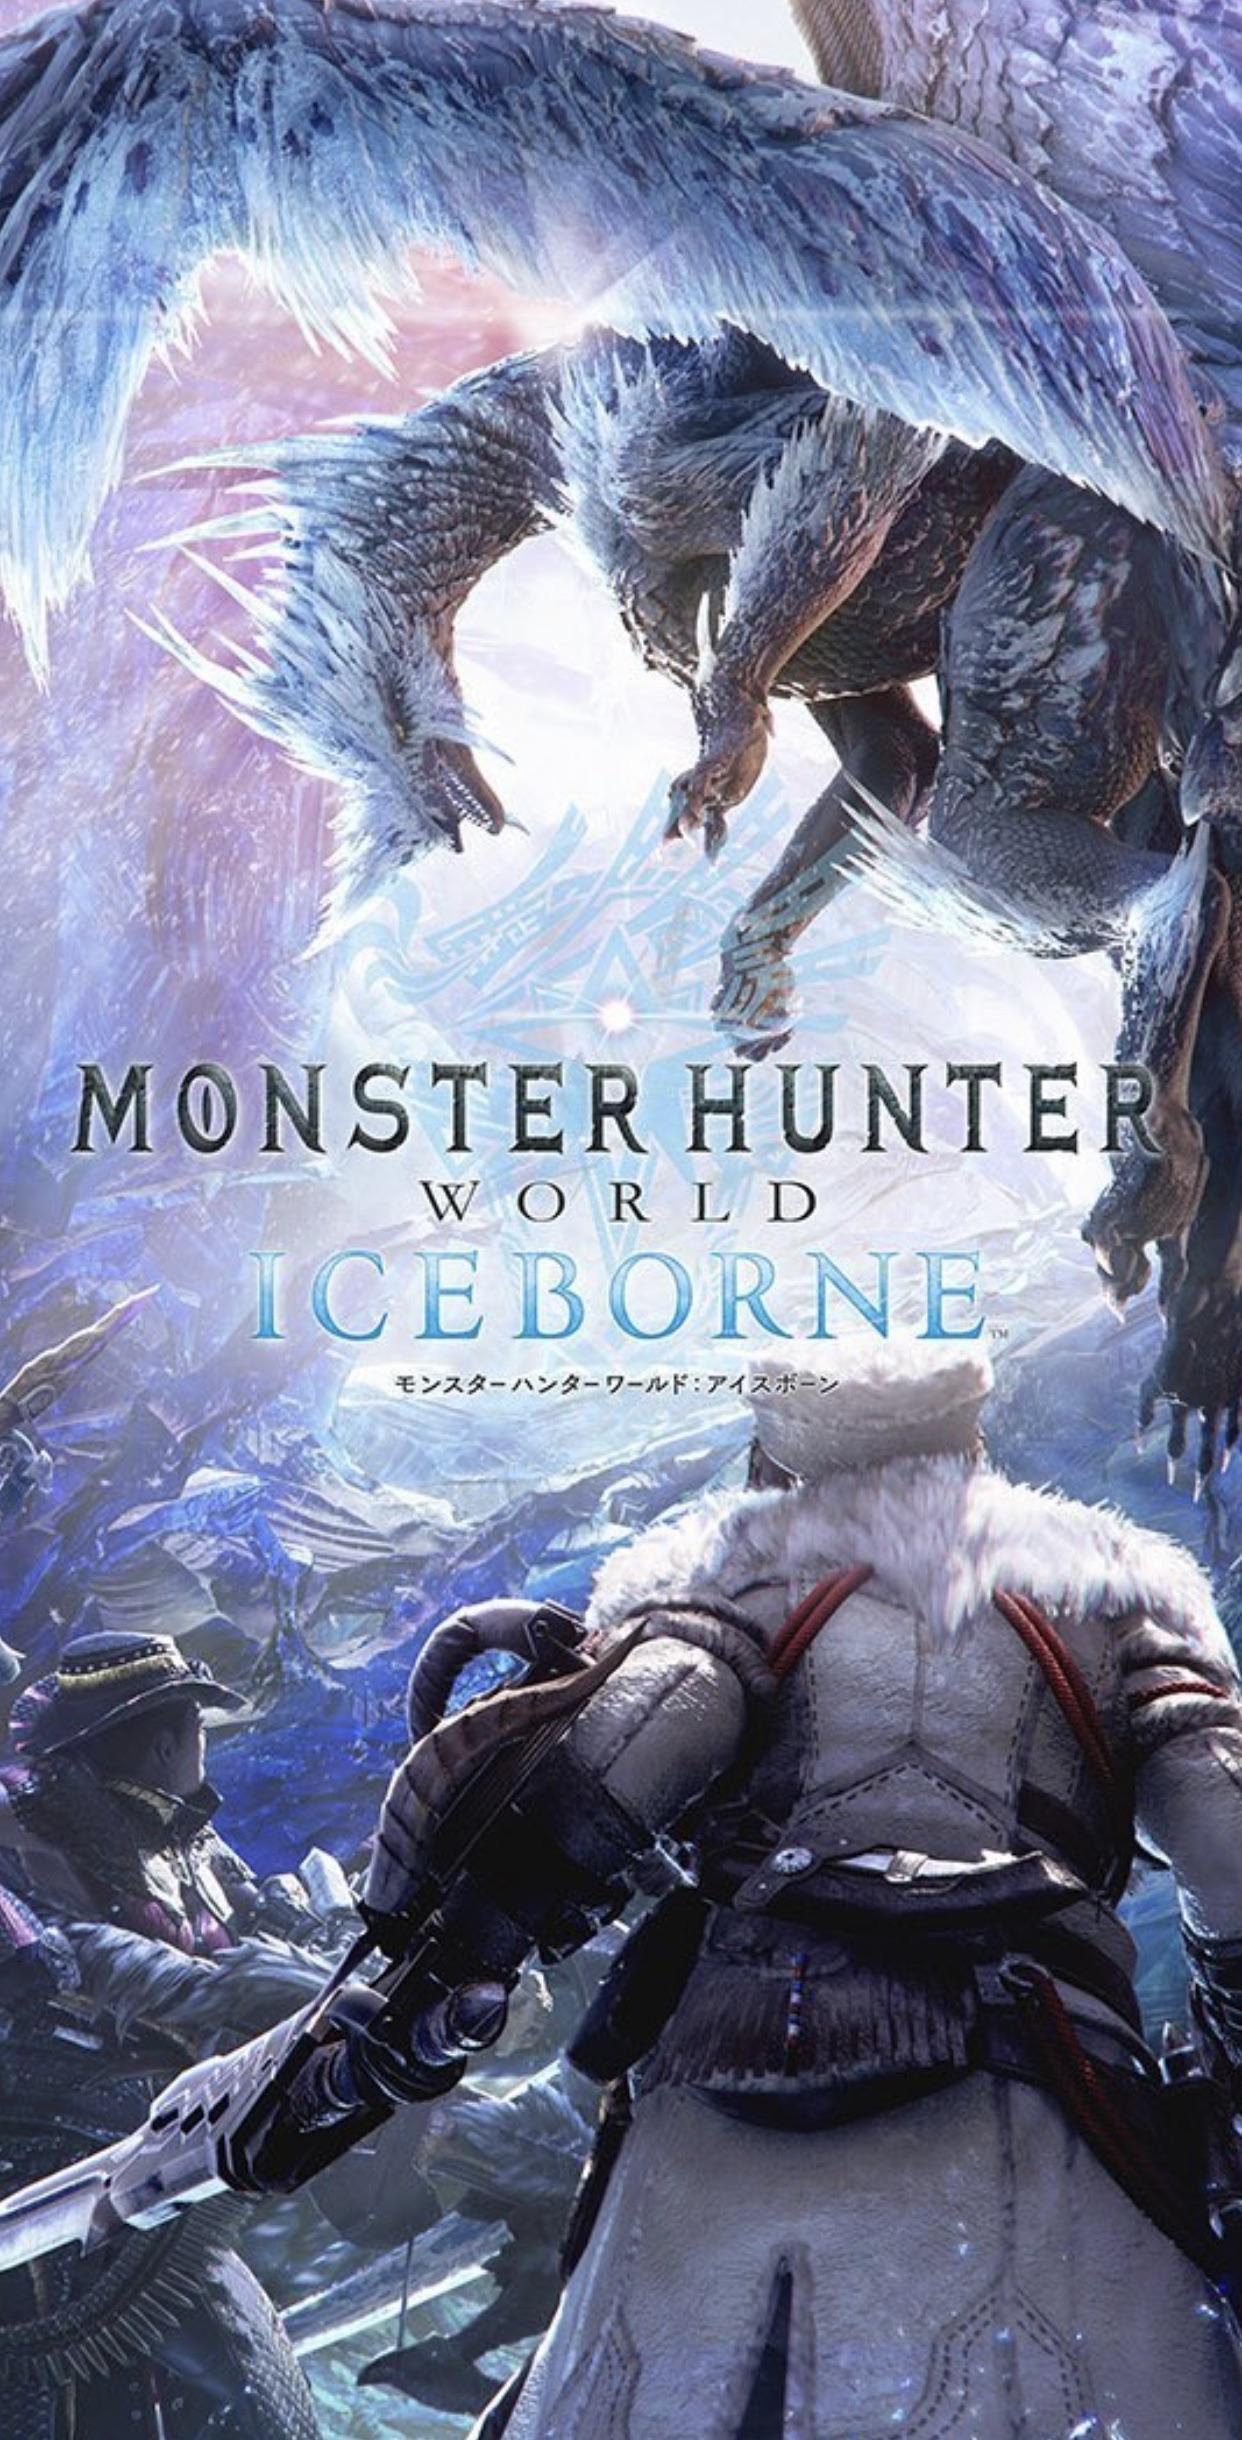 Monster Hunter World Iceborne Wallpapers Top Free Monster Hunter World Iceborne Backgrounds Wallpaperaccess